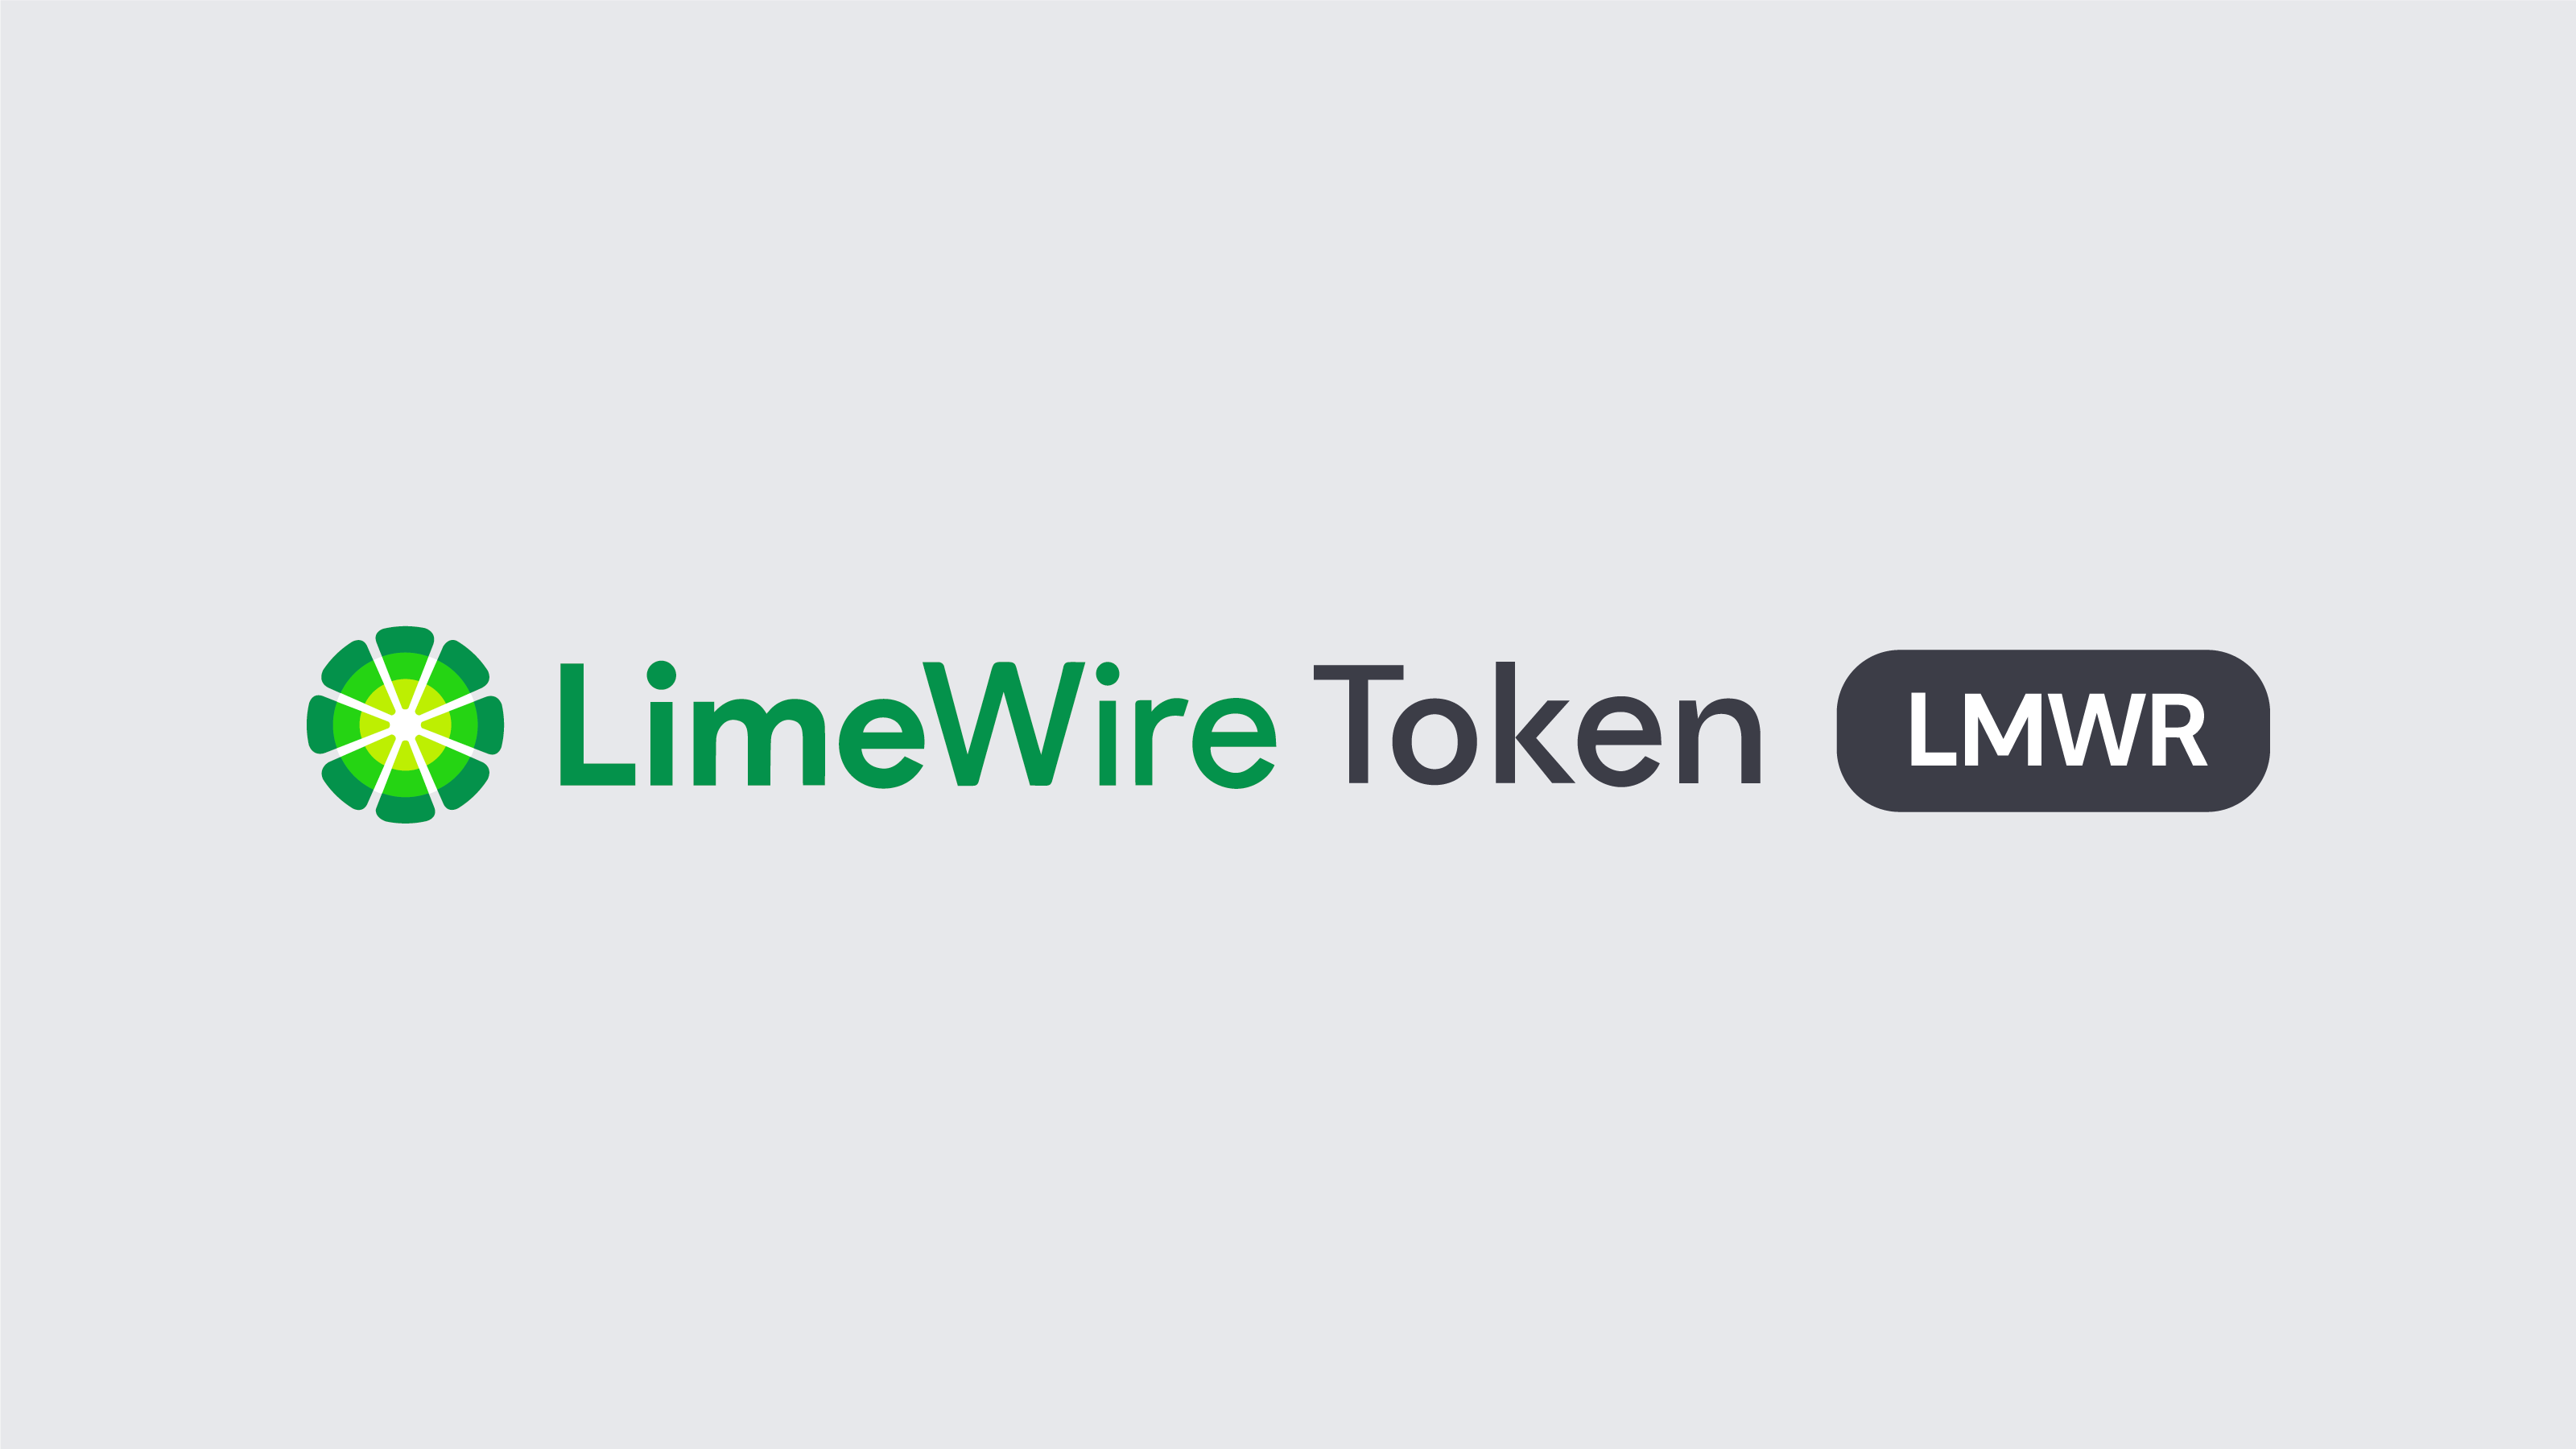 LimeWire Airdrop " Reivindique tokens LMWR gratuitos